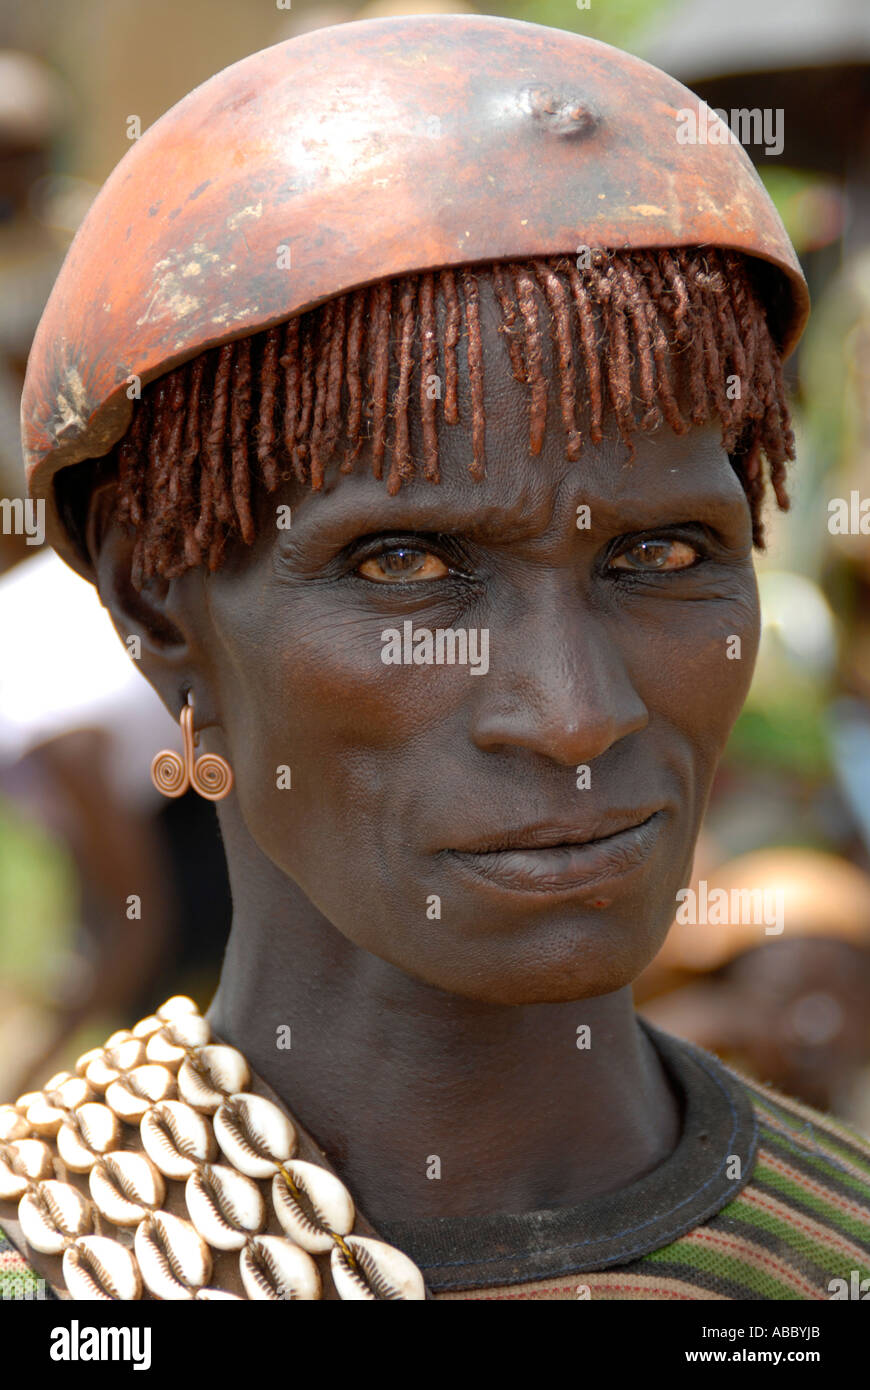 Porträt streng aussehende Frau trägt eine Kette von Kauri-Muscheln und eine Kalabasse auf dem Kopf auf dem Markt der Keyafer Äthiopien Stockfoto